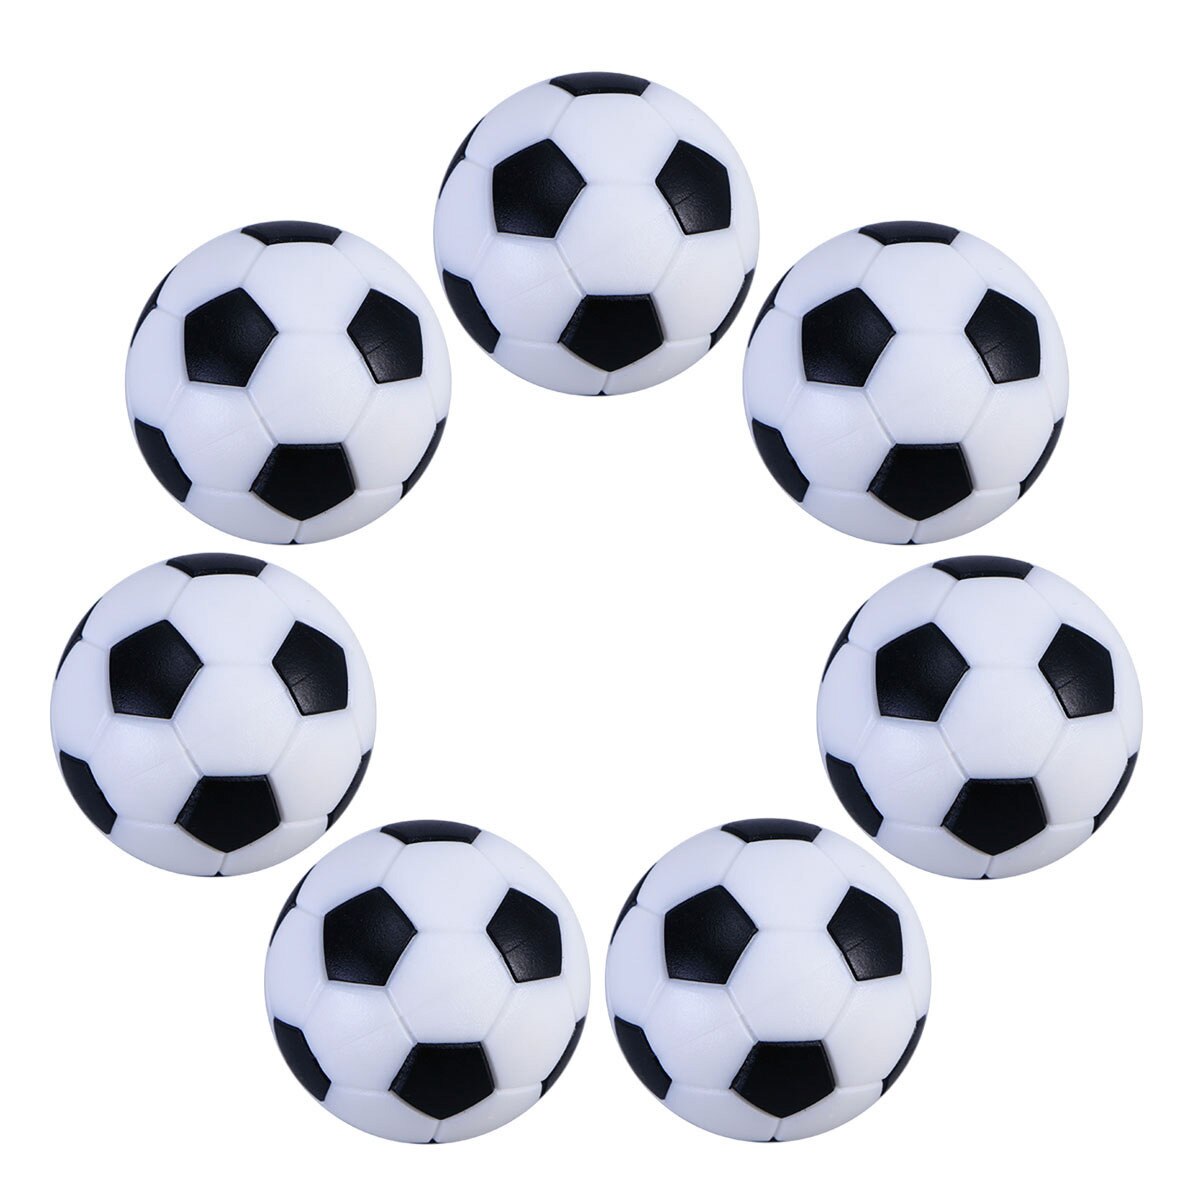 공 테이블 Foosball Soccerfootball 미니 교체 게임 탁상 작은 공식 스포츠 Foosballs 블랙 화이트 액세서리 축구